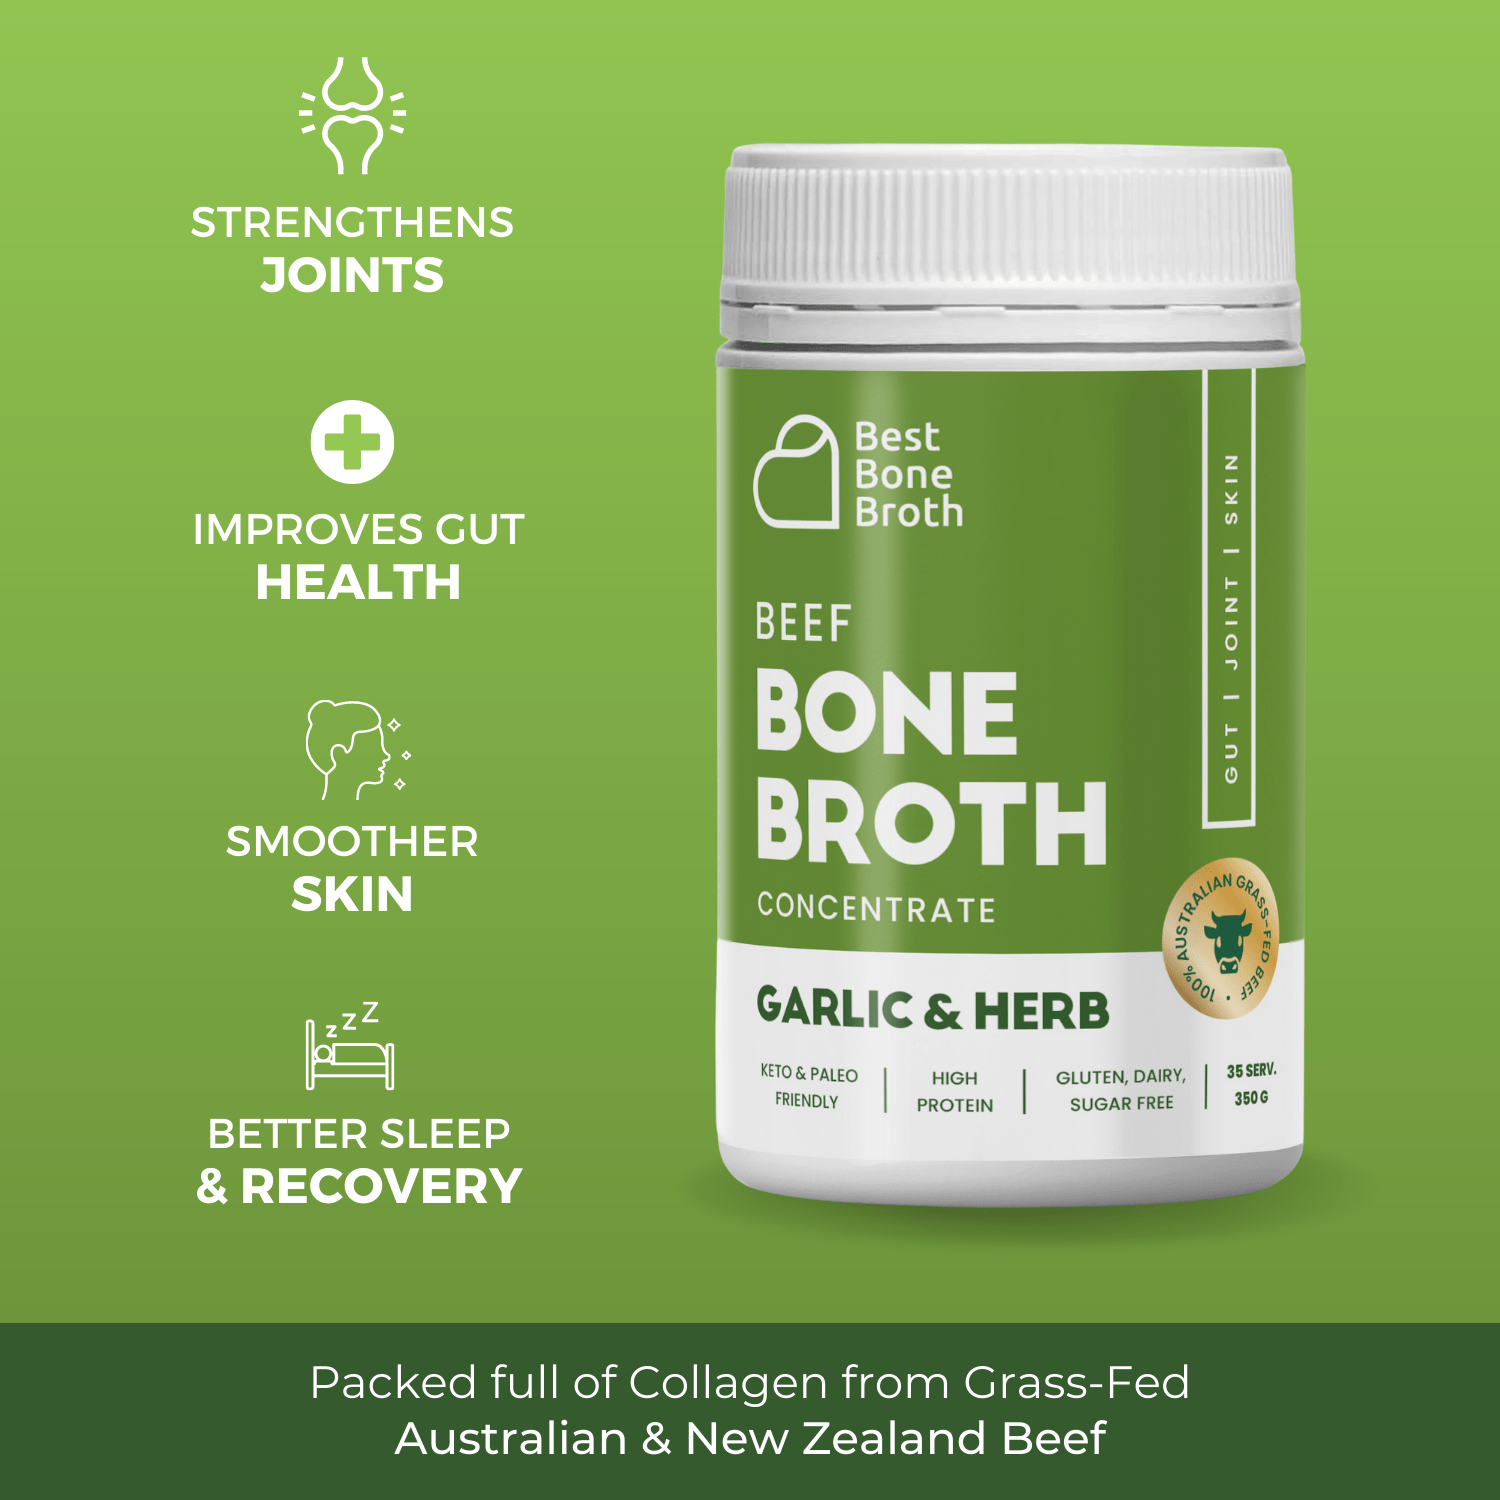 Best Bone Broth Soups & Broths Beef Bone Broth - Garlic & Herb Flavour – 350g bottle (35 servings)